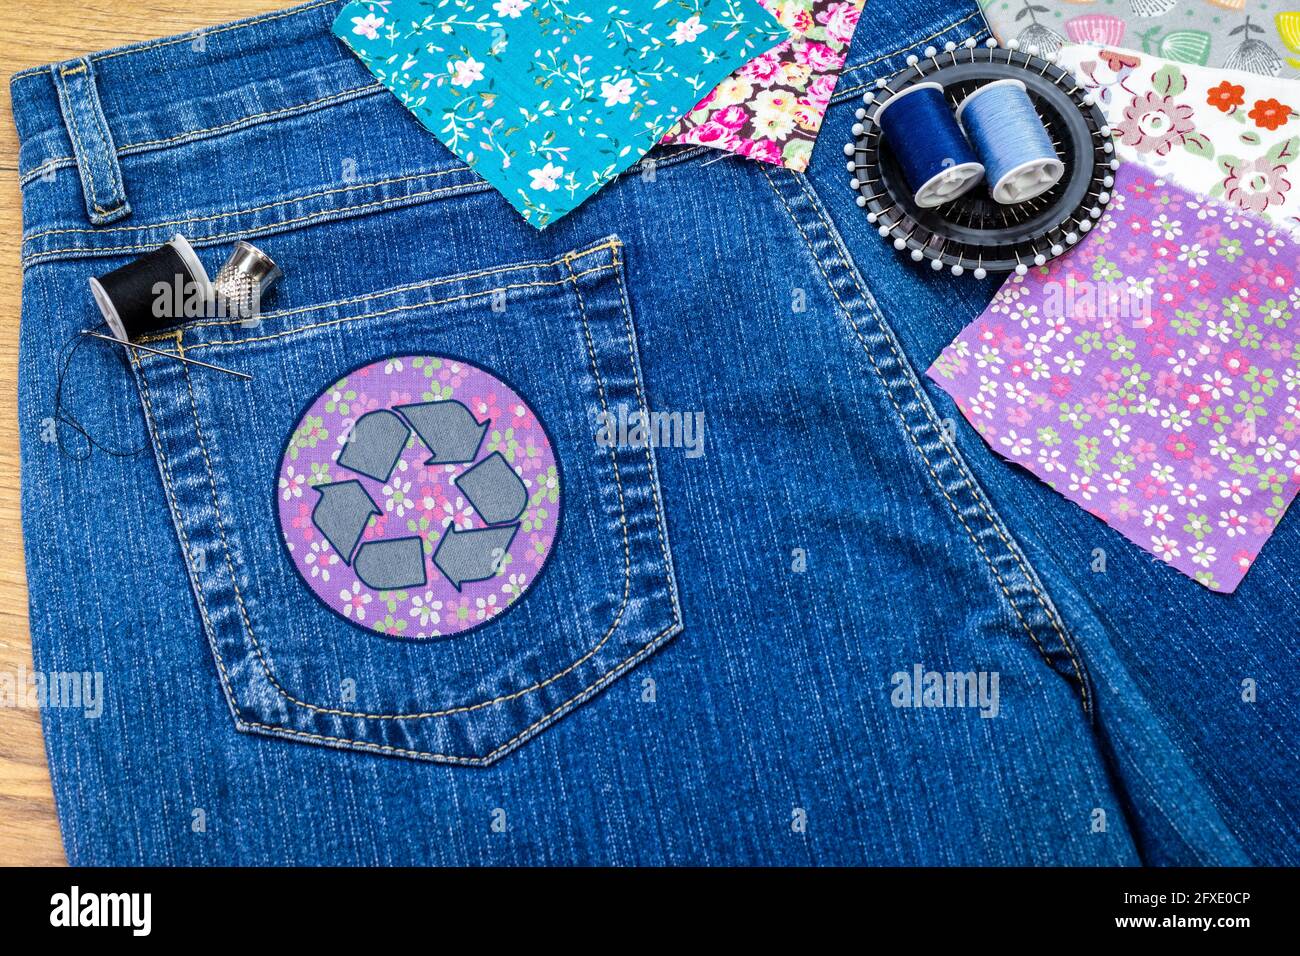 Recycle abbigliamento icona patch su jeans, moda sostenibile visibile mentding concetto, riparazione, riciclaggio, riutilizzo di vestiti e tessuti per ridurre gli sprechi Foto Stock